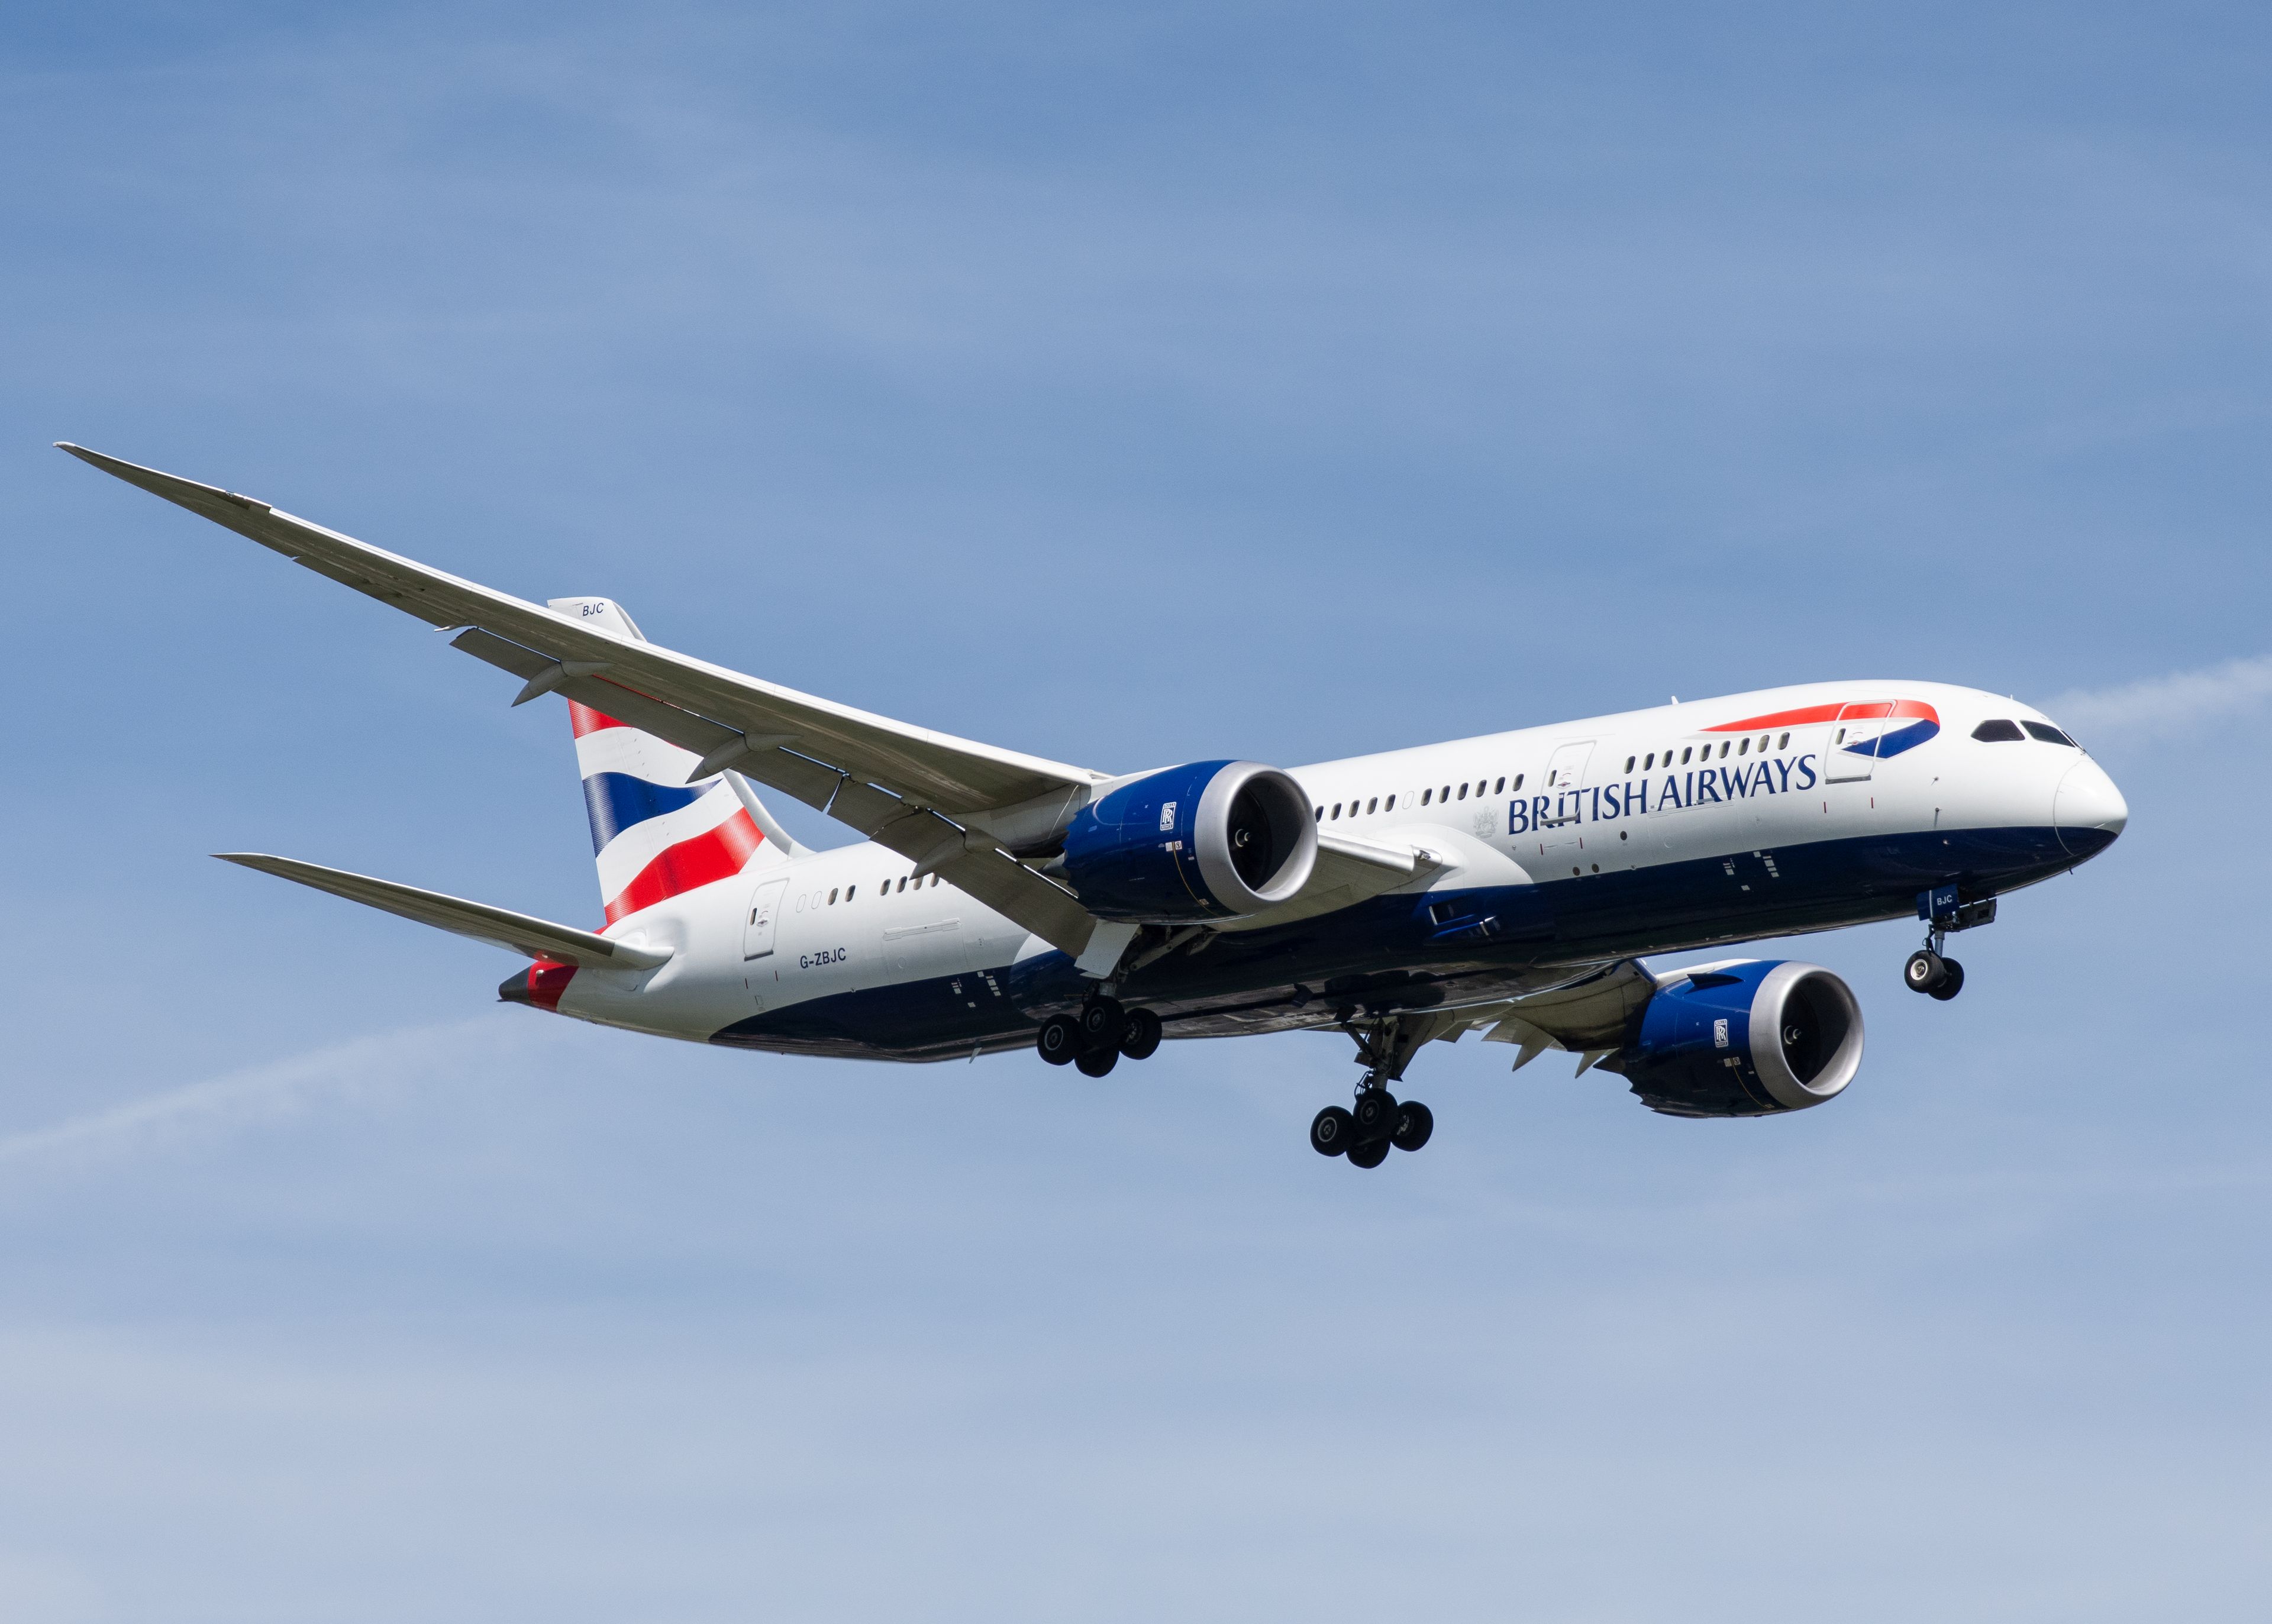 G-ZBJC/GZBJC British Airways Boeing 787 Airframe Information - AVSpotters.com